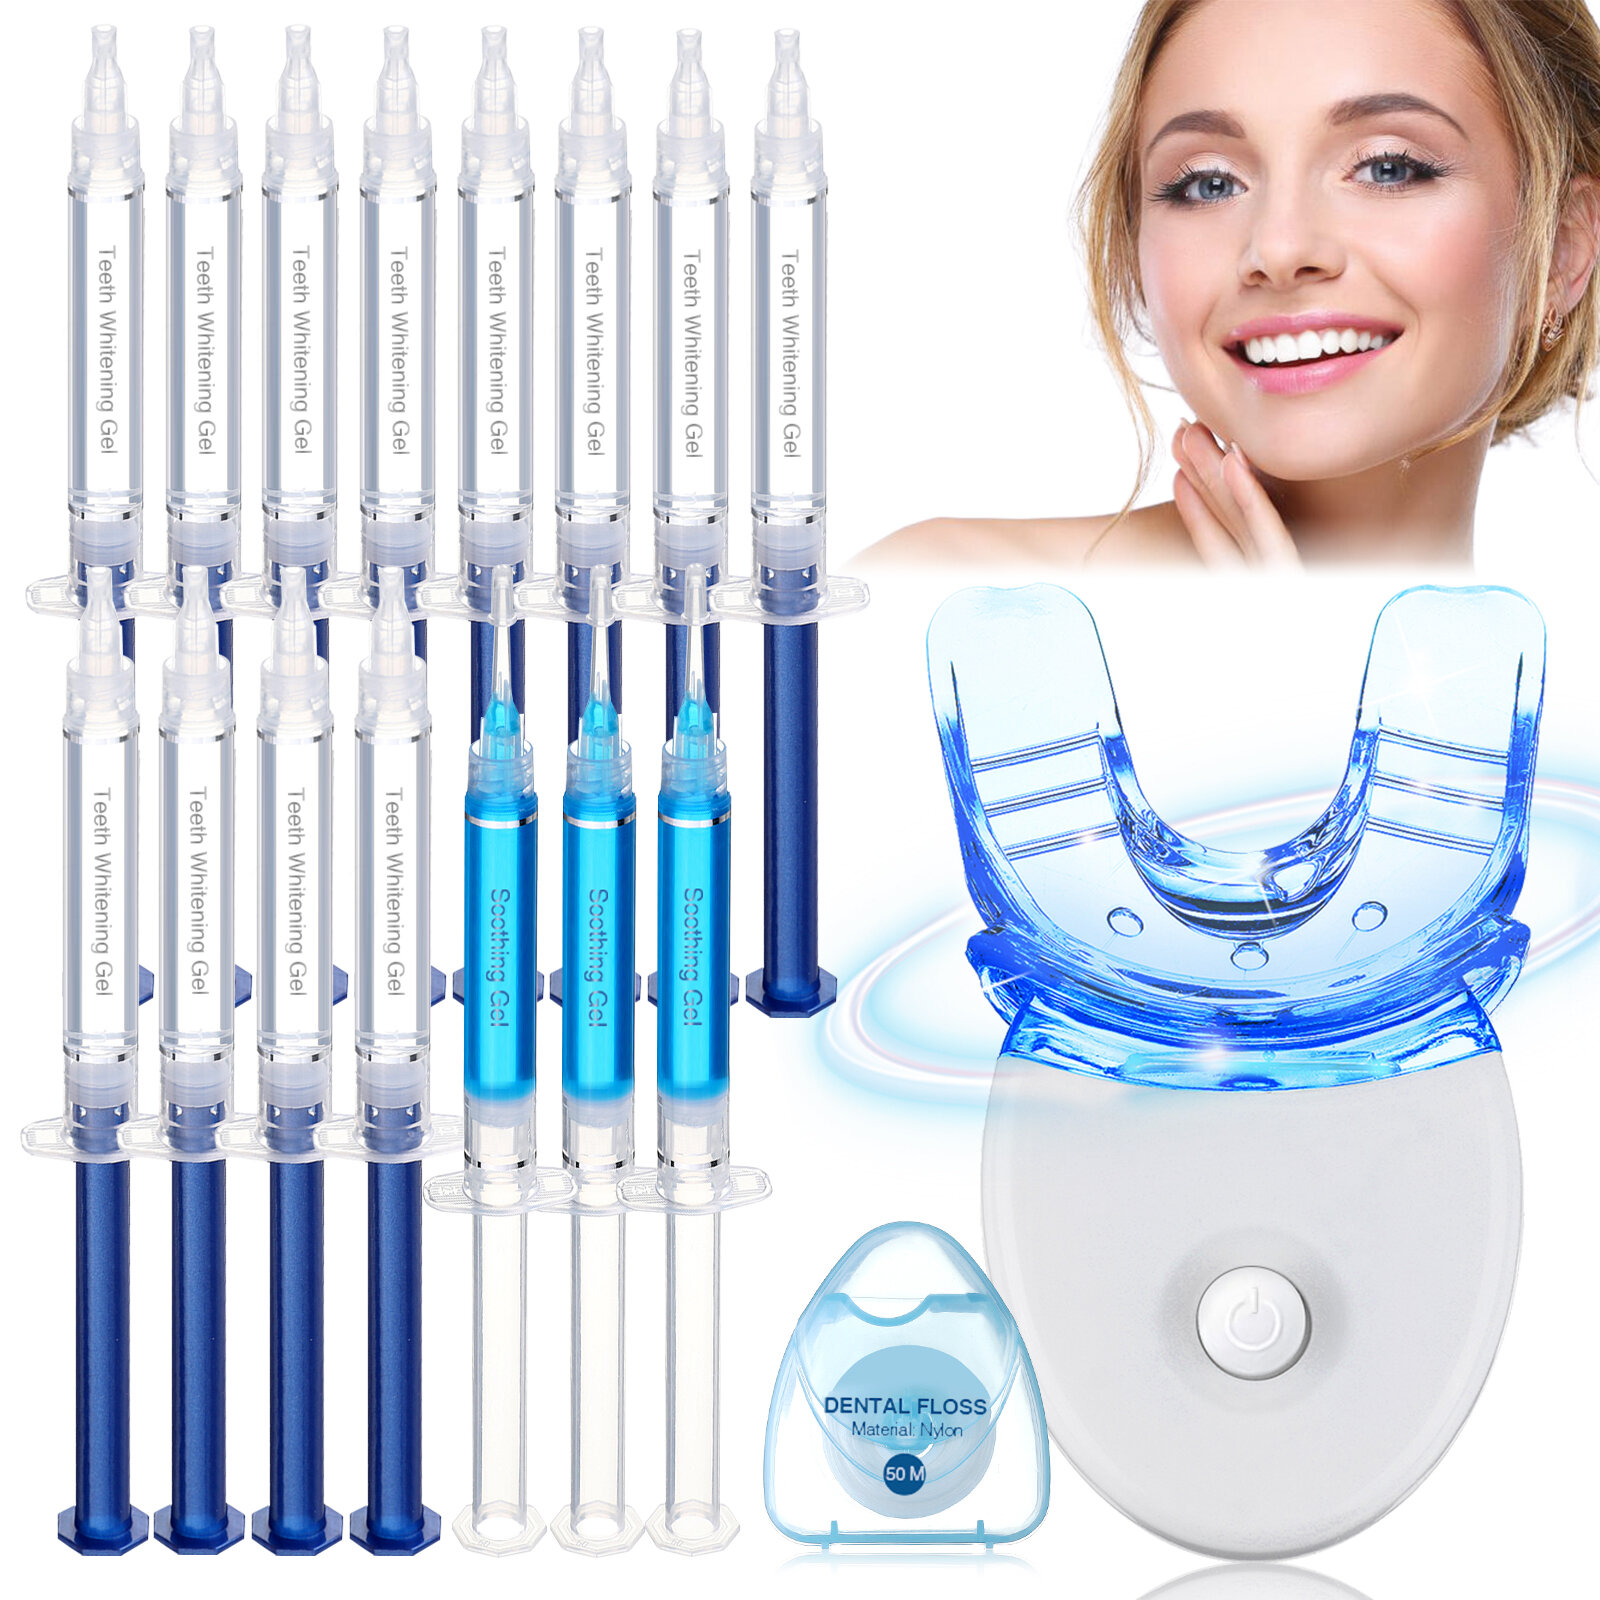 Zestaw do wybielania zębów Teeth Whitening Kit with LED Light z Polski za $11.99 / ~47zł